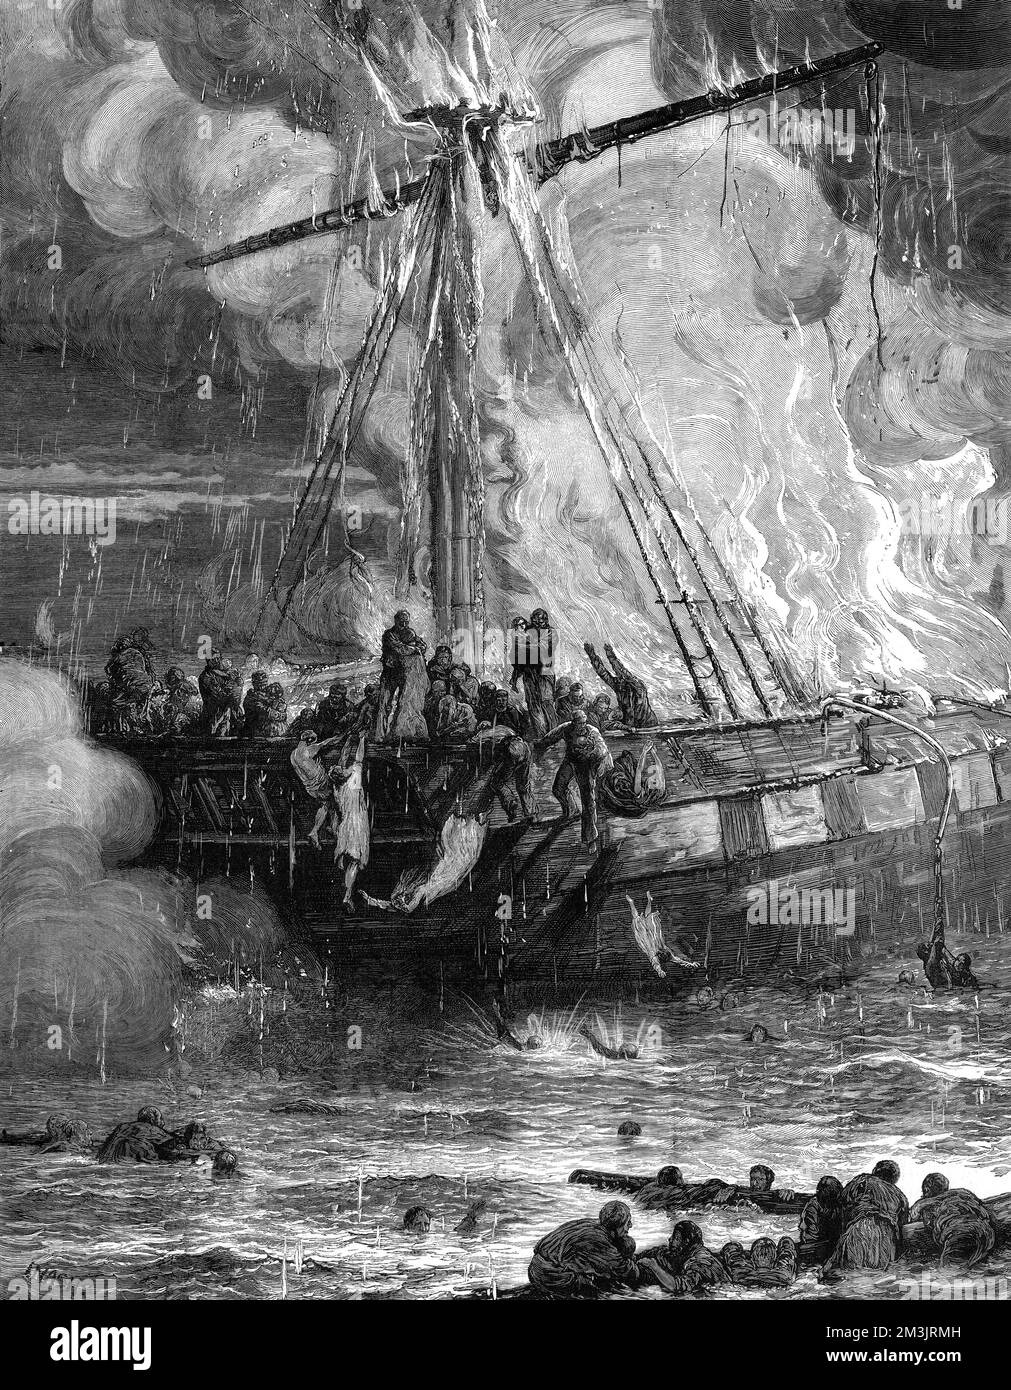 Emigrantenschiff, Cospatrick, Feuer auf See. Bei der Entdeckung des Feuers versuchte die Crew, die Flammen zu ersticken, aber der Wind verbreitete sie um das Schiff. Sobald die Passagiere von dem Feuer erfuhren, setzte Panik ein und die Leute versuchten, sich selbst zu retten, indem sie über Bord sprangen, und viele ertranken daraufhin. Einige schafften es, in die Rettungsboote zu steigen, aber nur zwei blieben über Wasser und alle Passagiere starben. Von 429 Emigrantenpassagieren und einer Besatzung von 45 Personen überlebten nur drei. 1875 Stockfoto